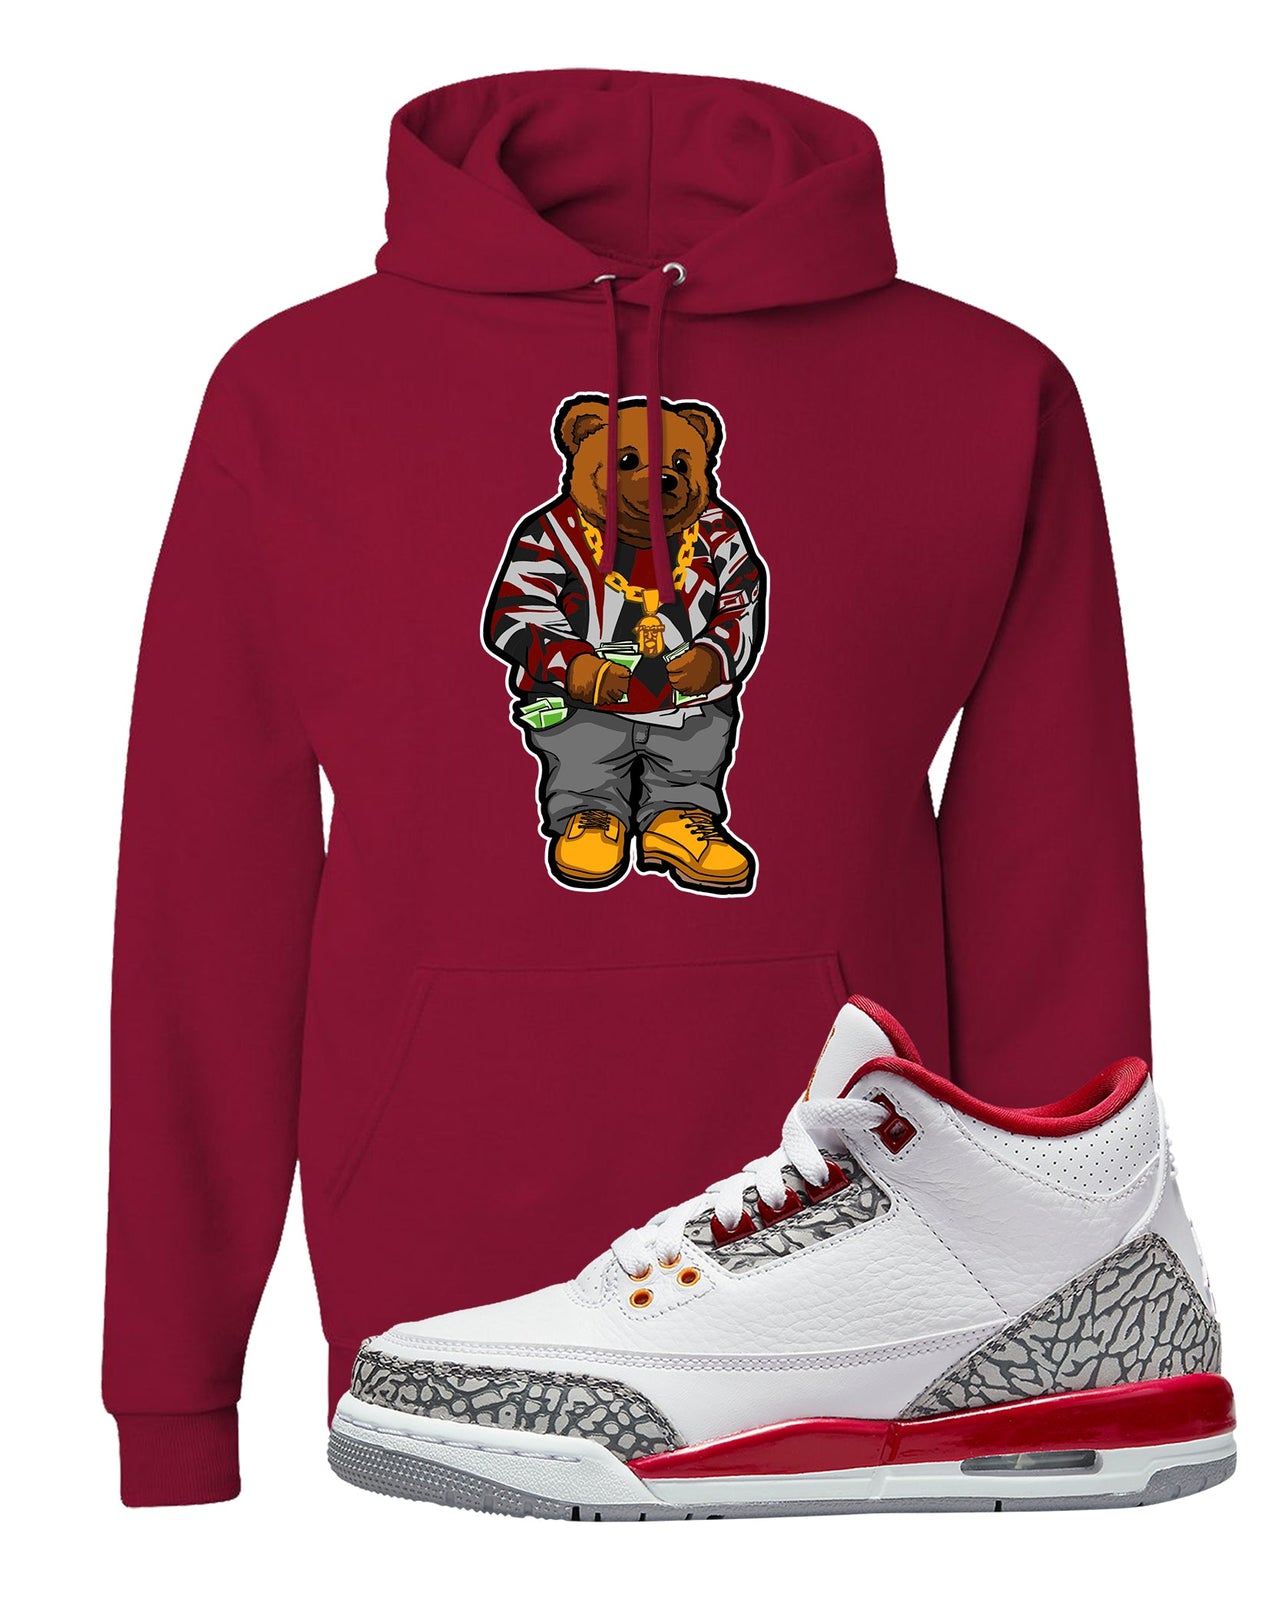 Cardinal Red 3s Hoodie | Sweater Bear, Cardinal